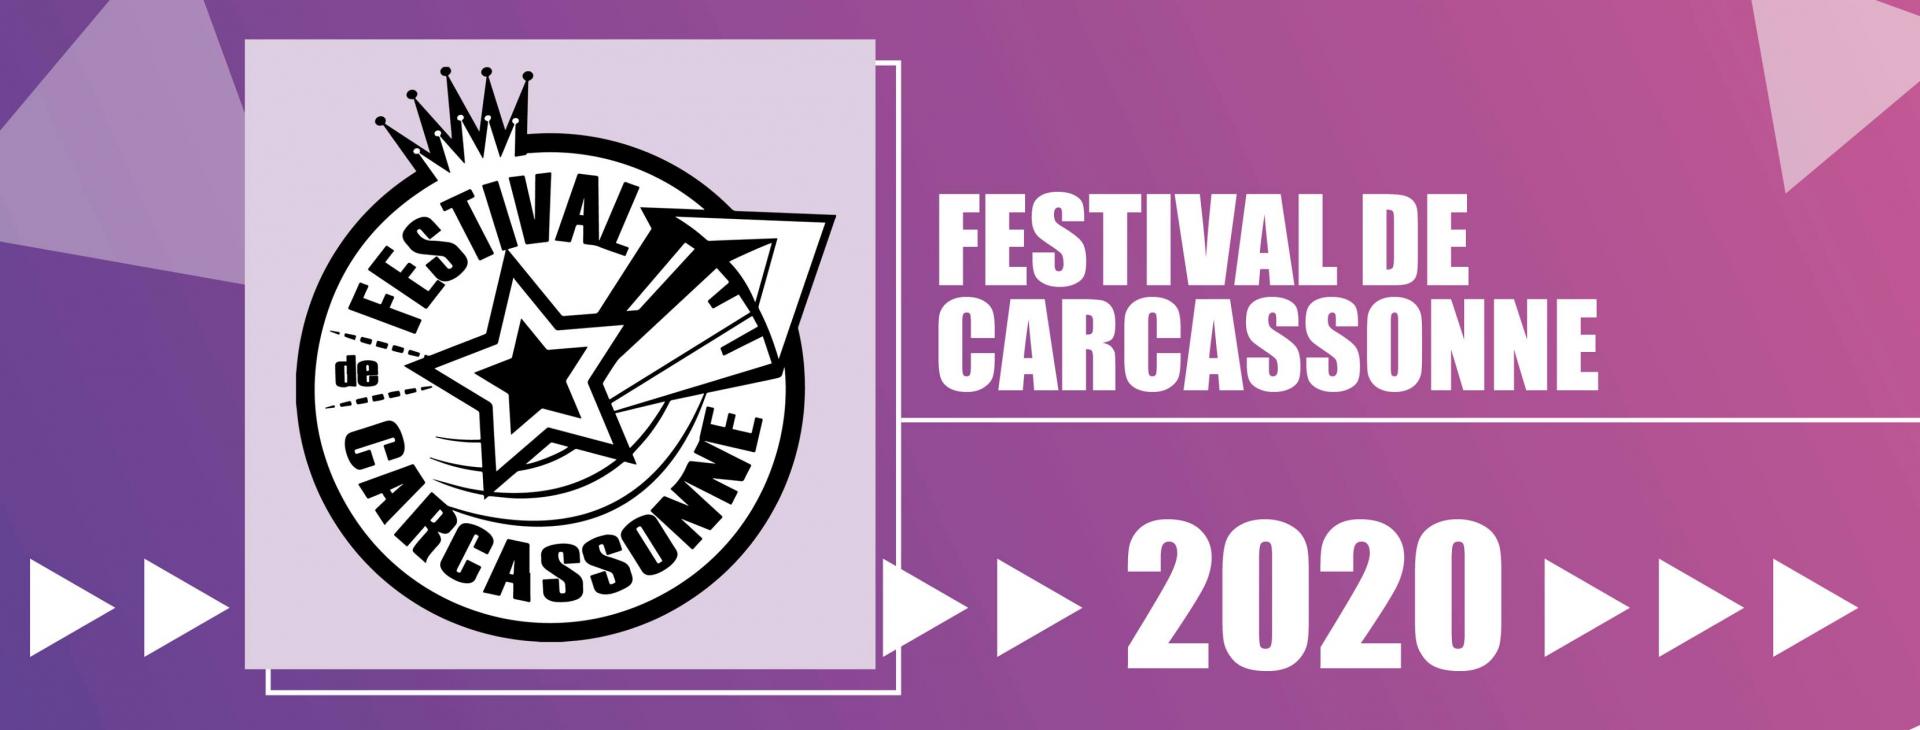 Festival de carcassonne